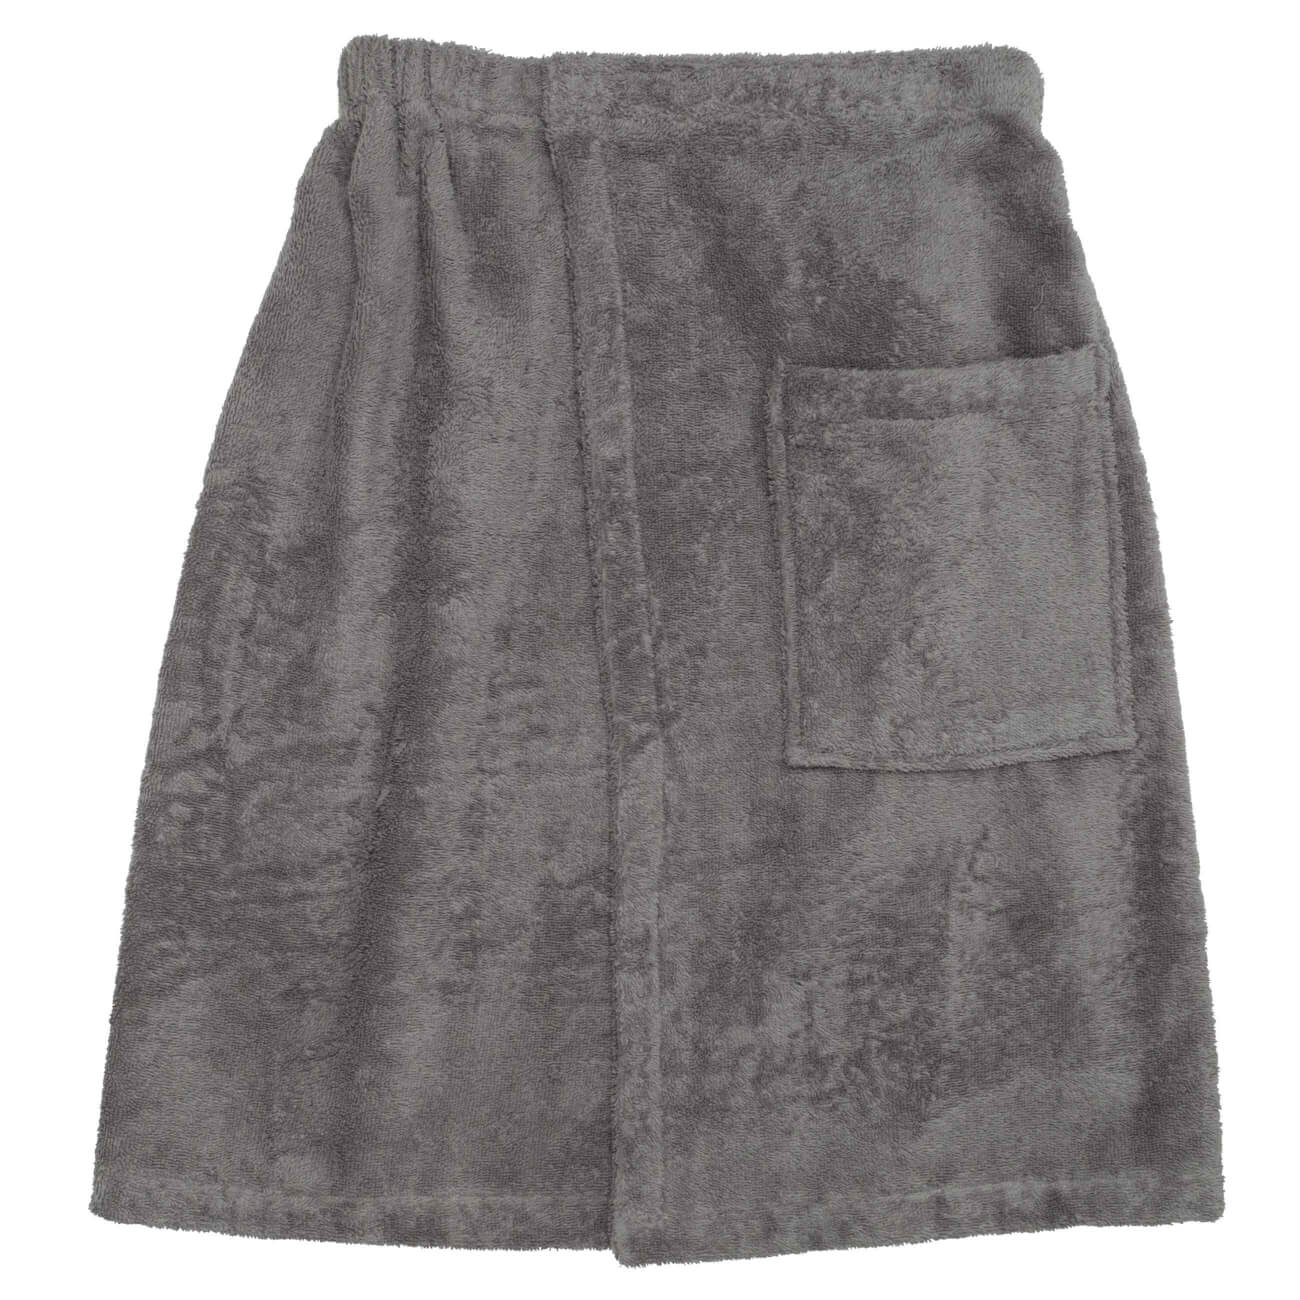 Полотенце-килт мужское, 70х160 см, на липучке, хлопок, темно-серое, Spa towel полотенце классик темно синий р 50х90